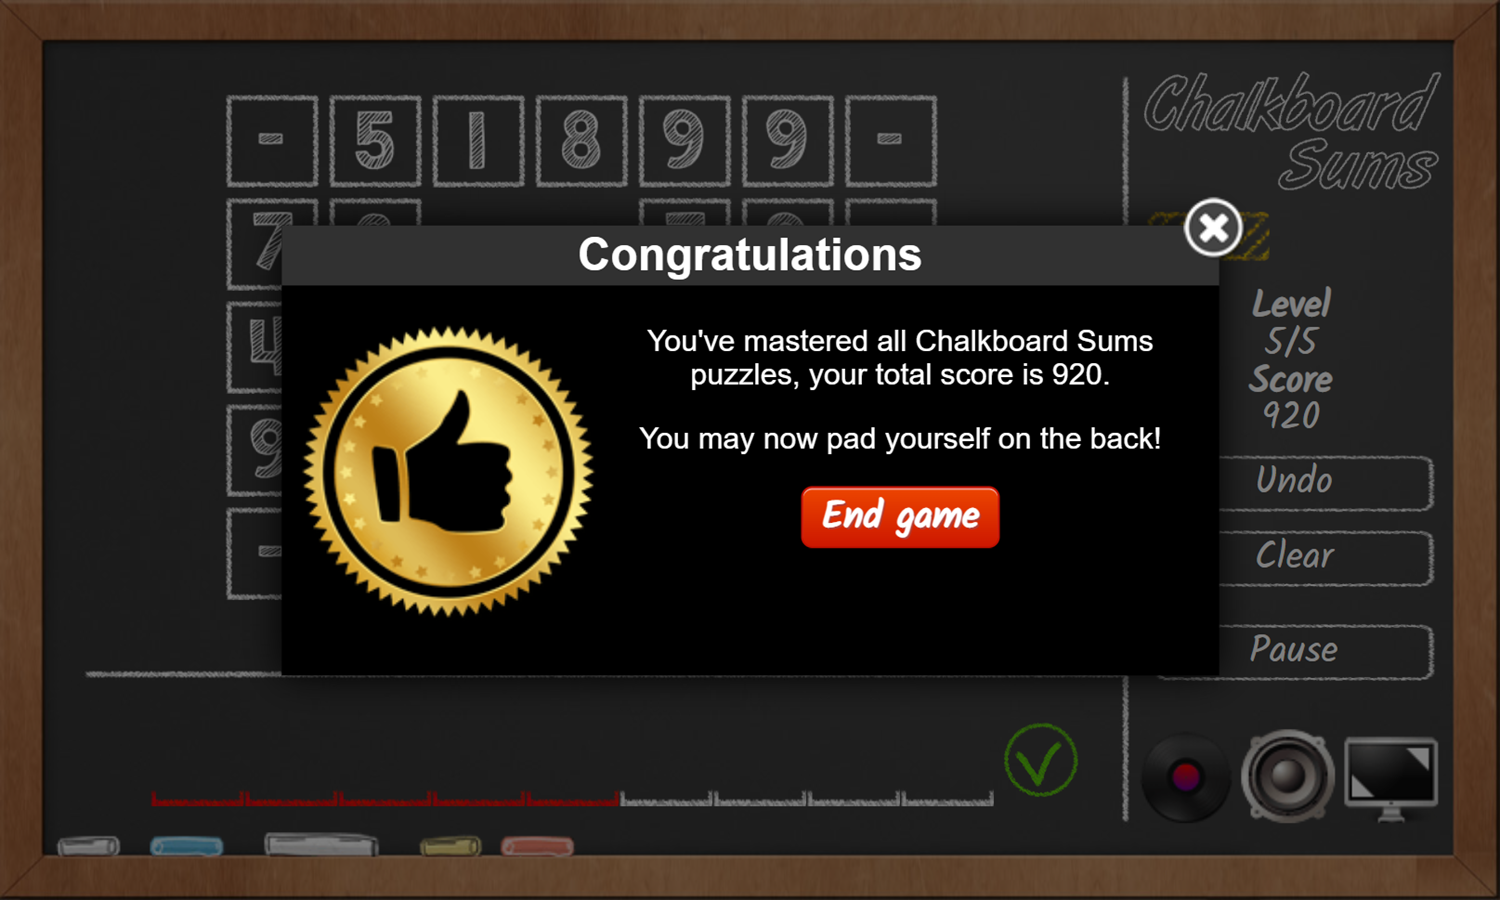 Chalkboard Sums Game Congratulations Screenshot.